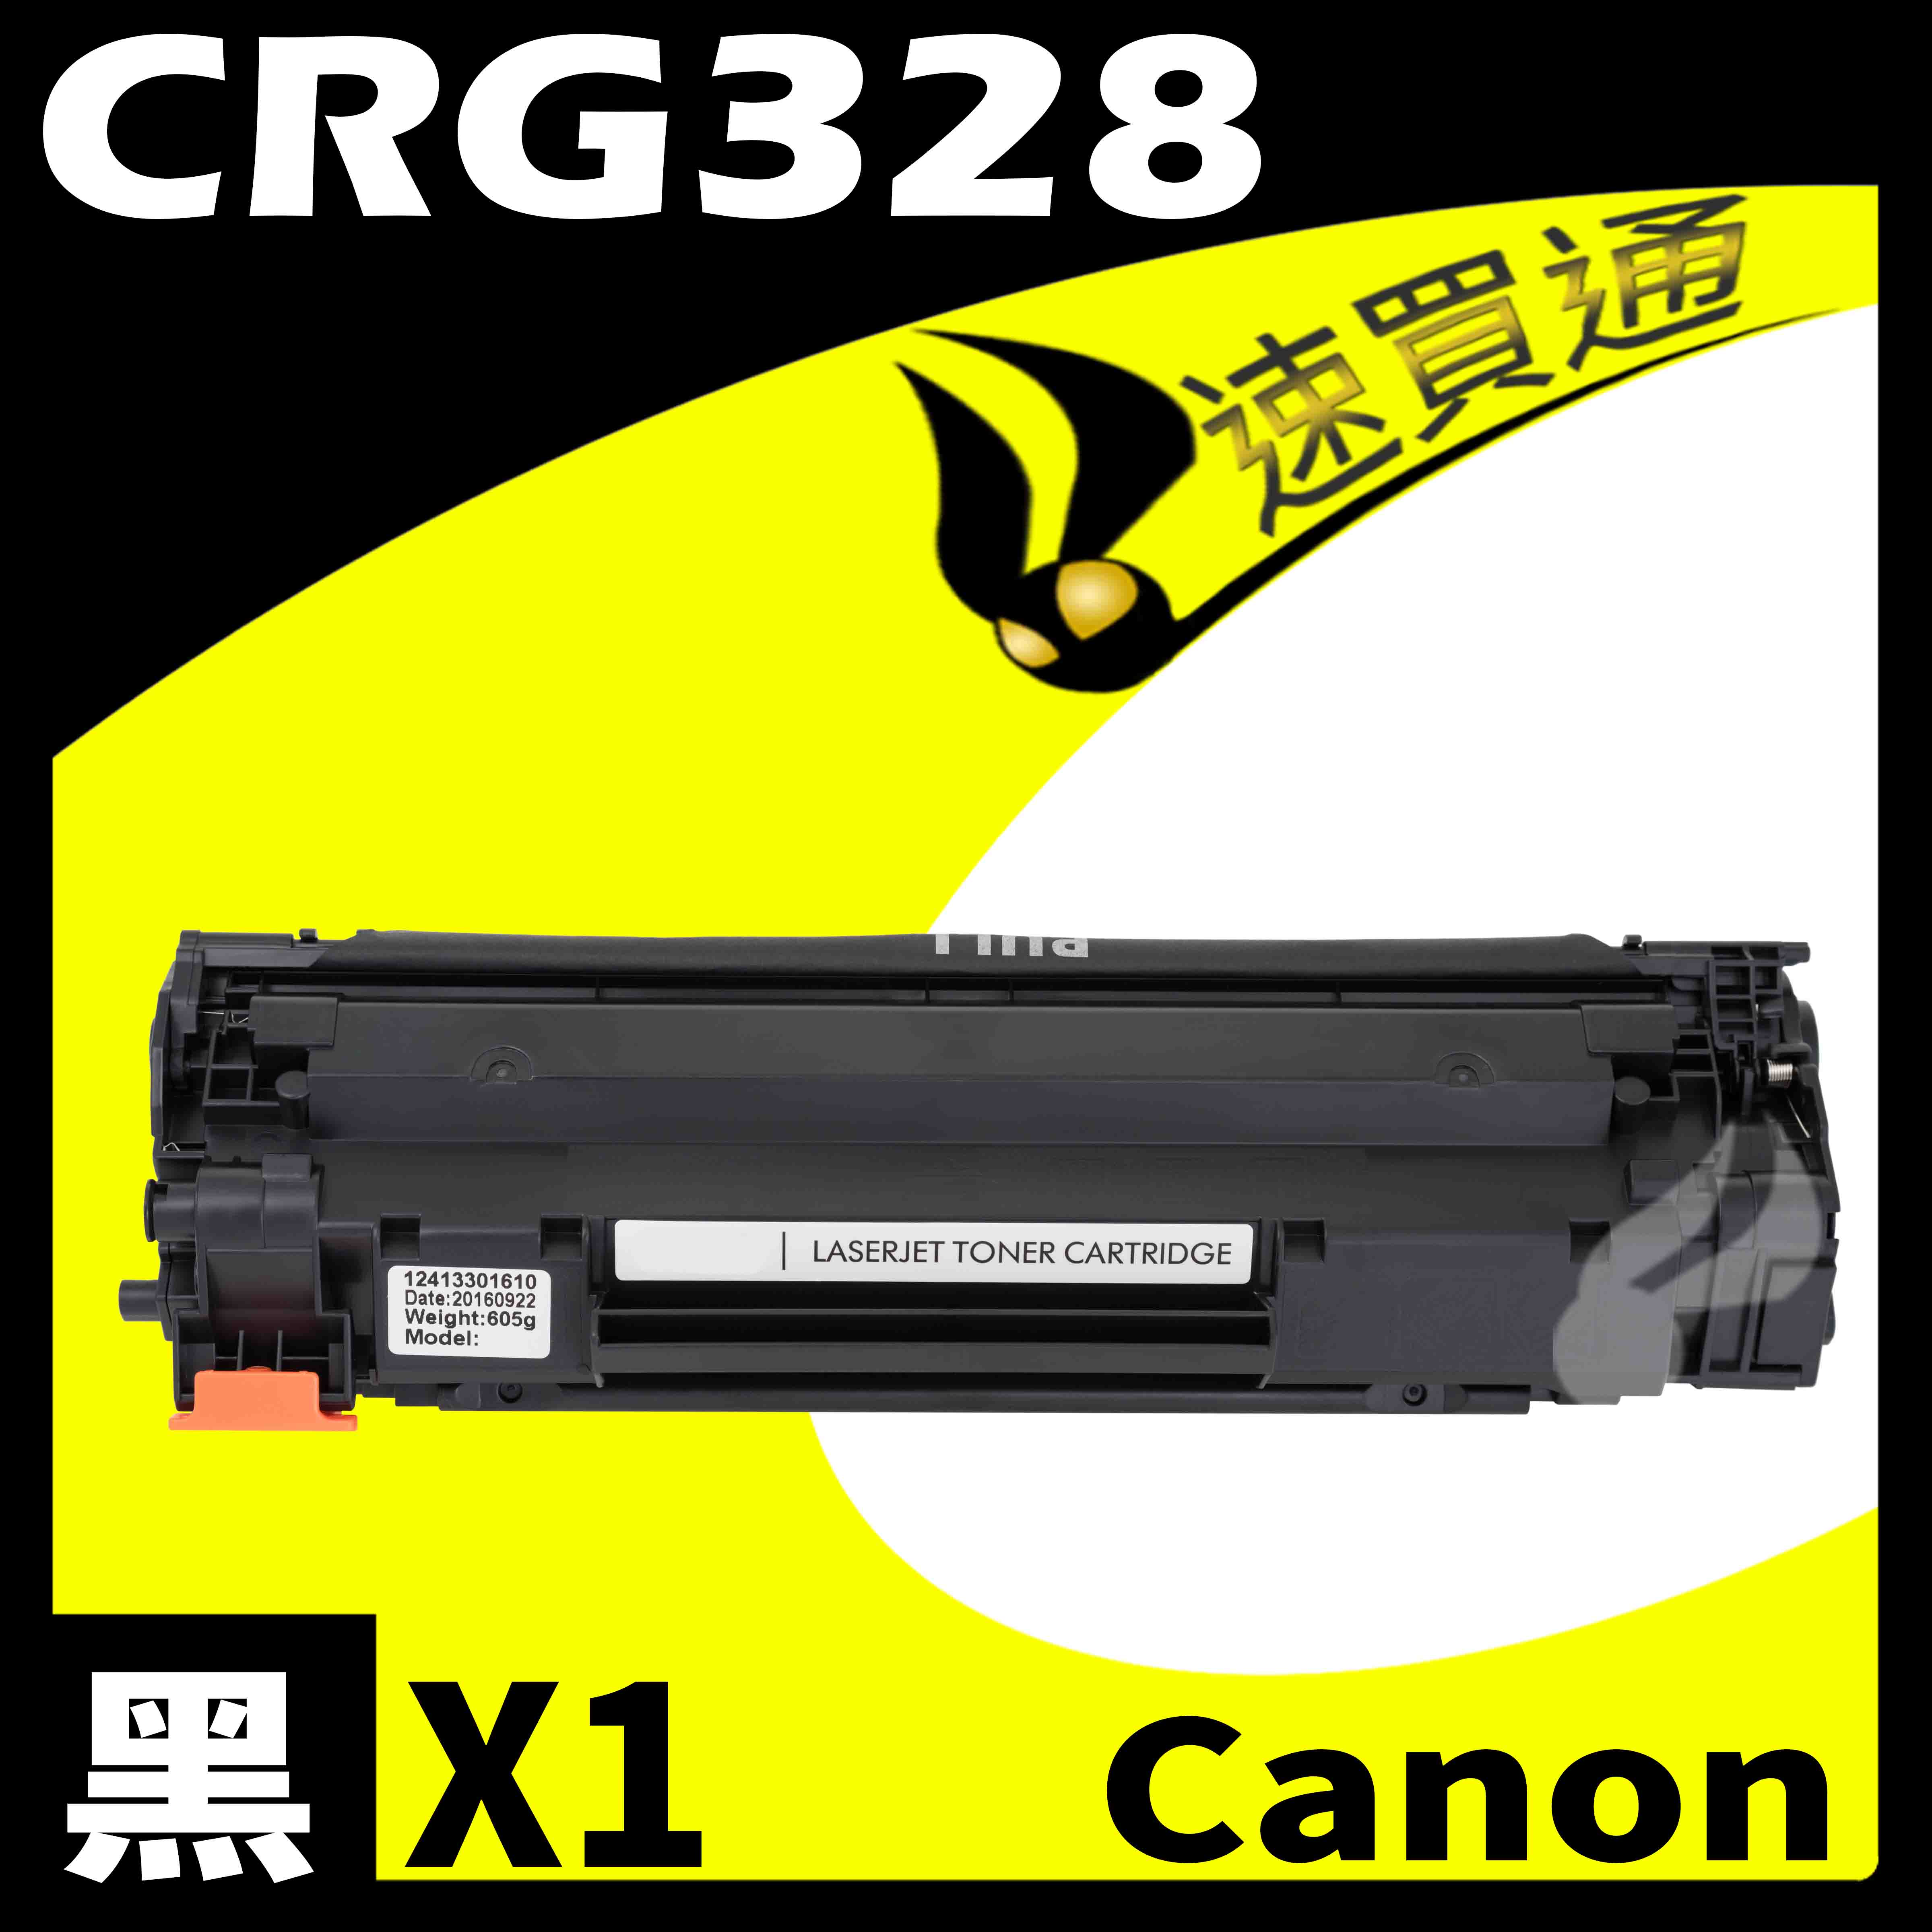 【速買通】Canon CRG-328/CRG328 相容碳粉匣 適用 MF4720w/4750/4820d/4870dn